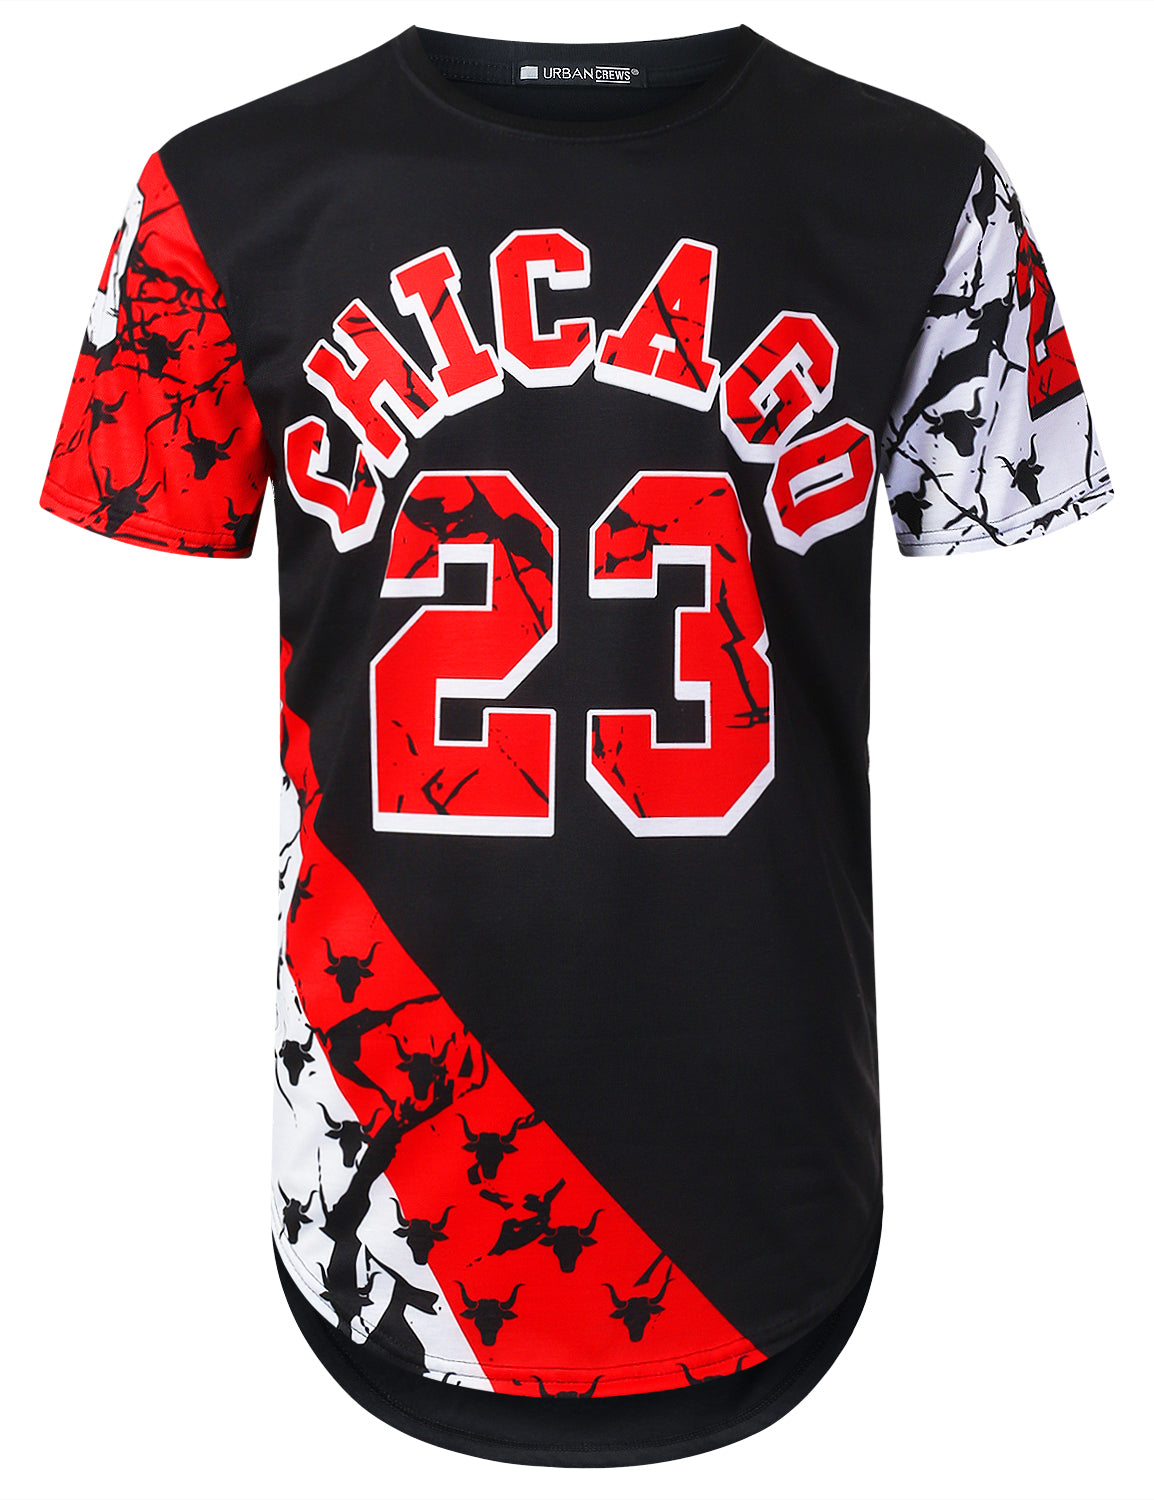 chicago 23 shirt